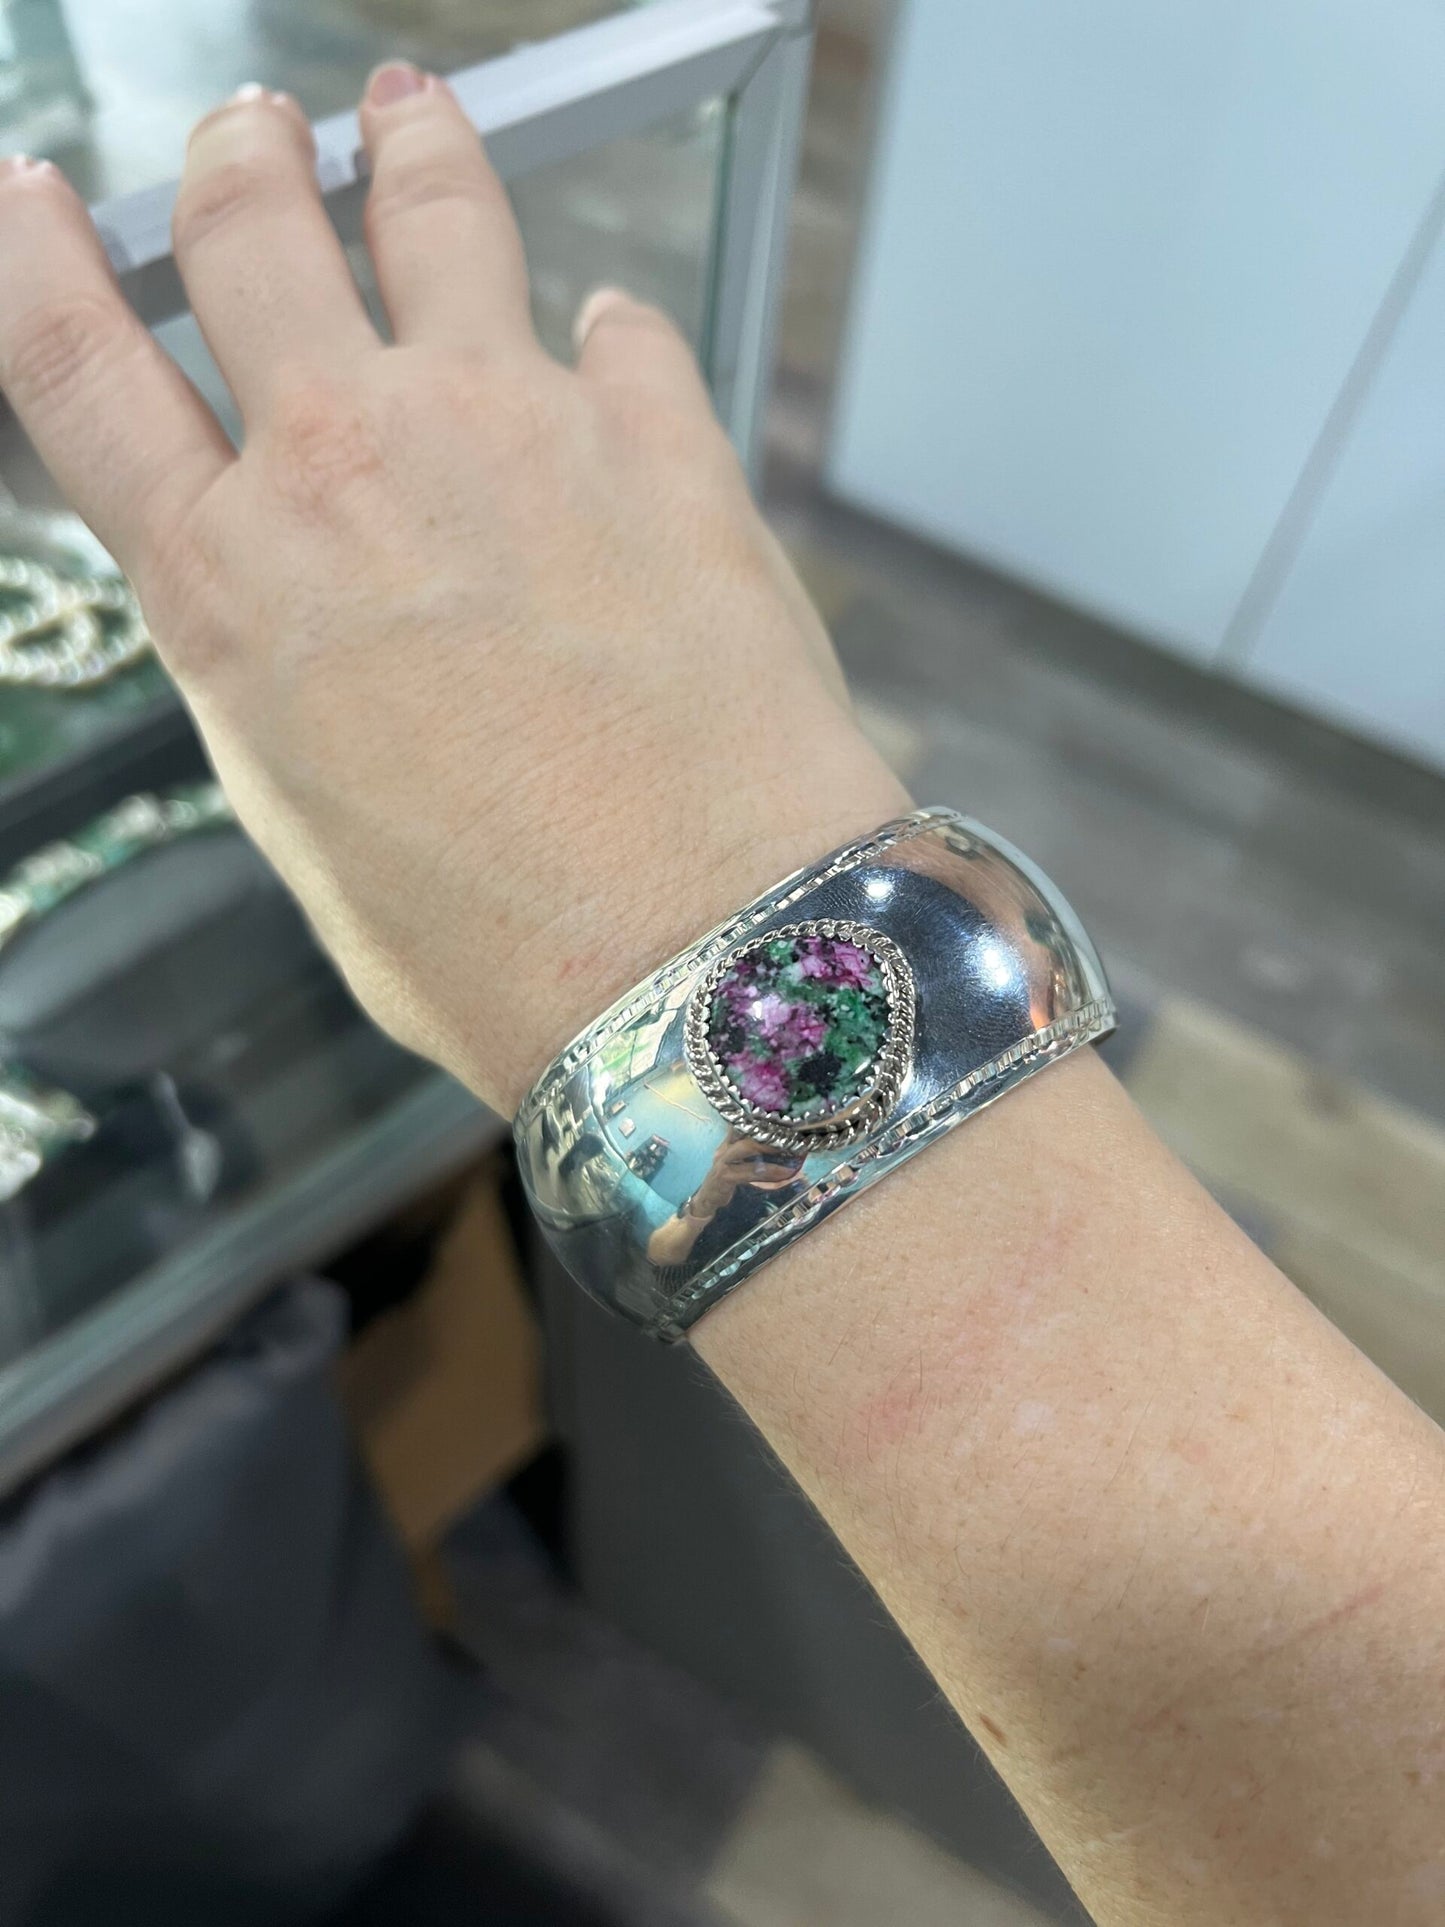 ruby in matrix sterling silver cuff bracelet on wrist